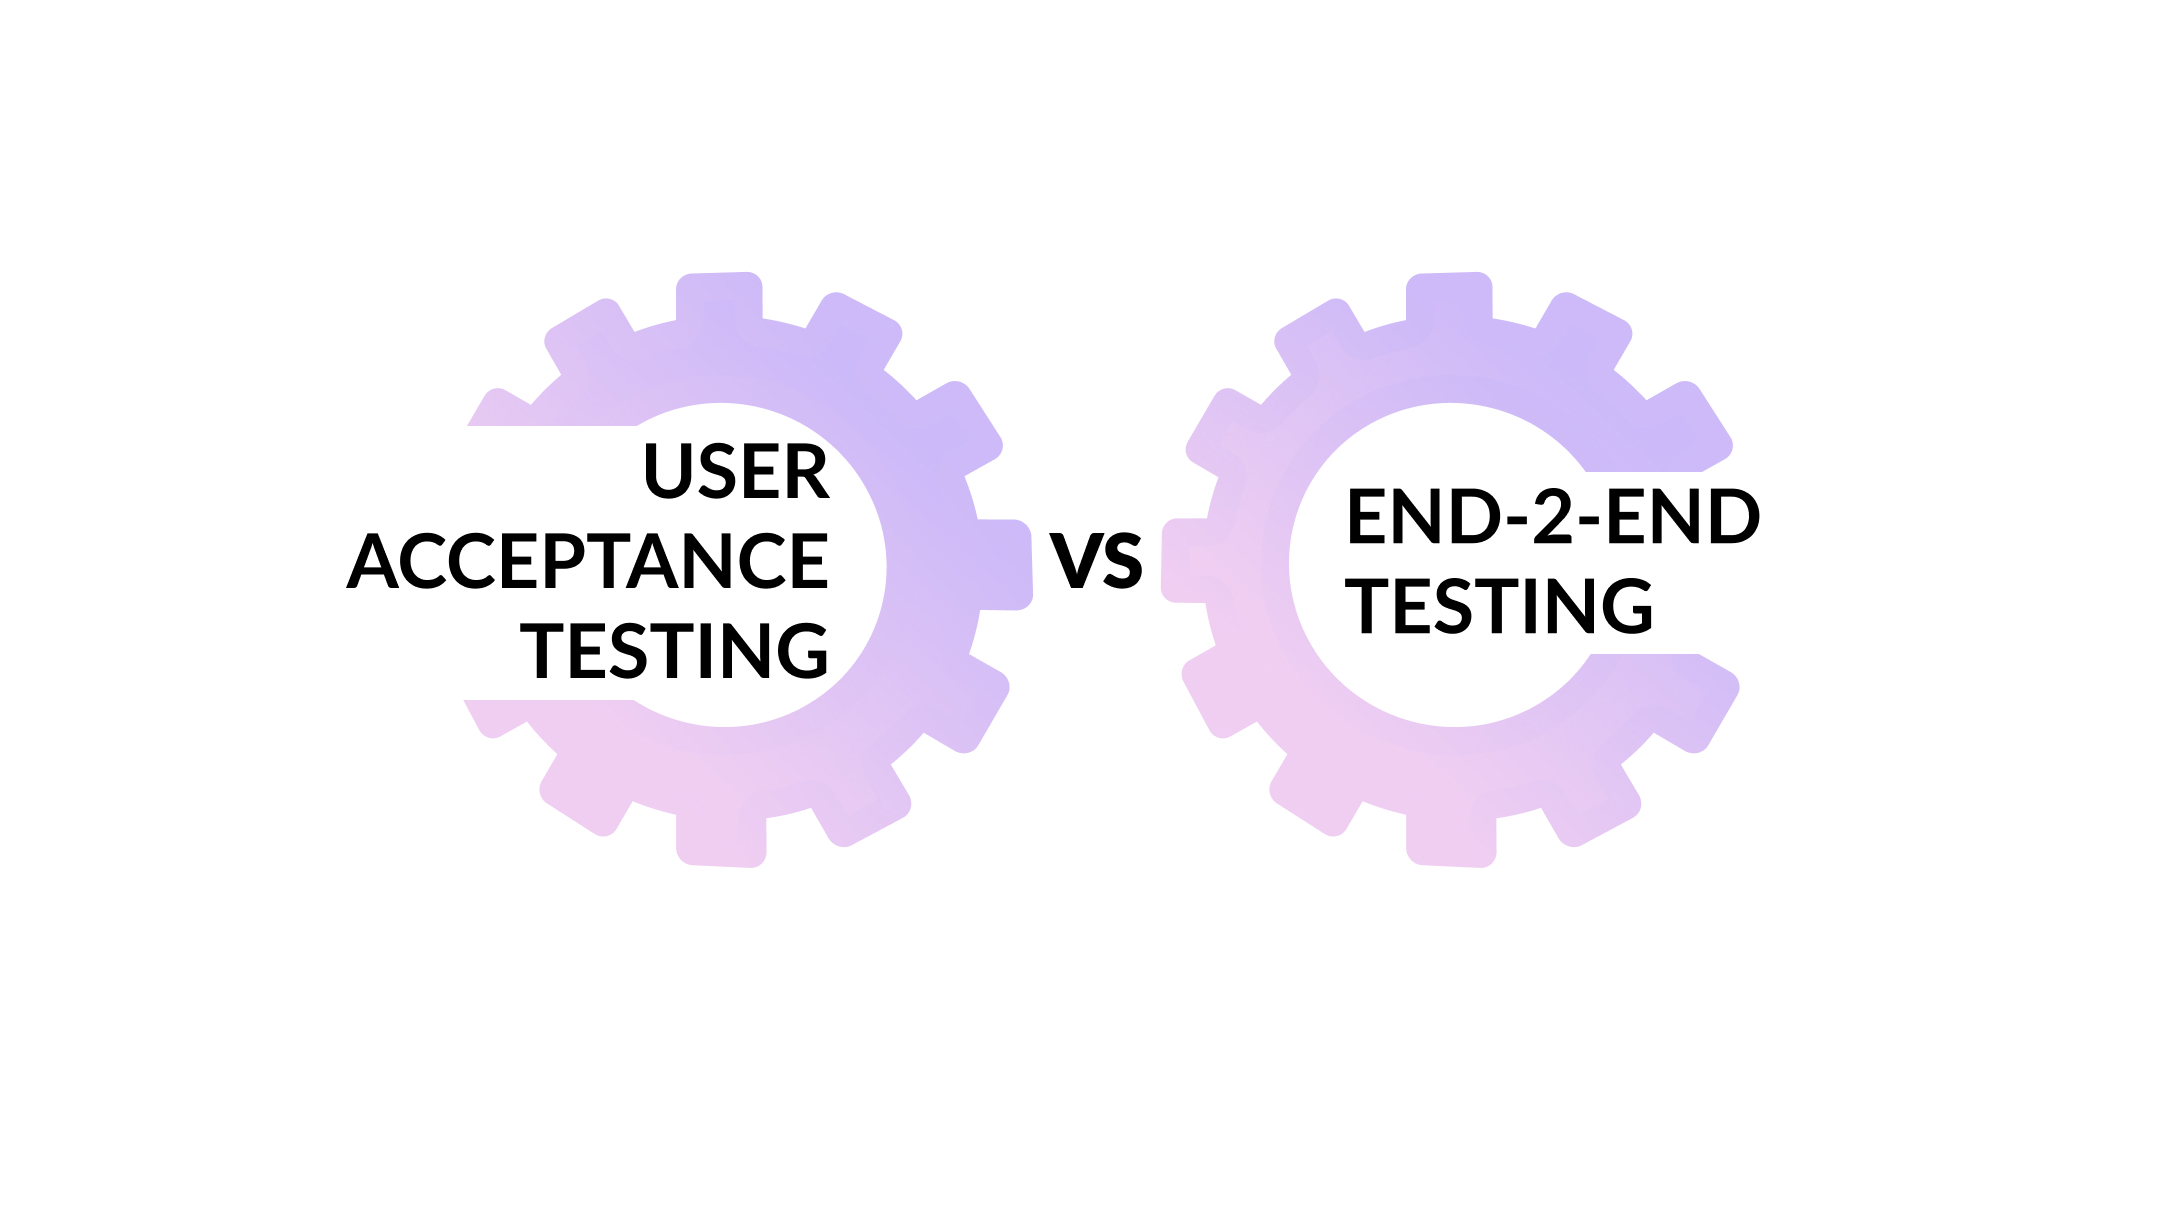 user acceptance VS end-2-end testing